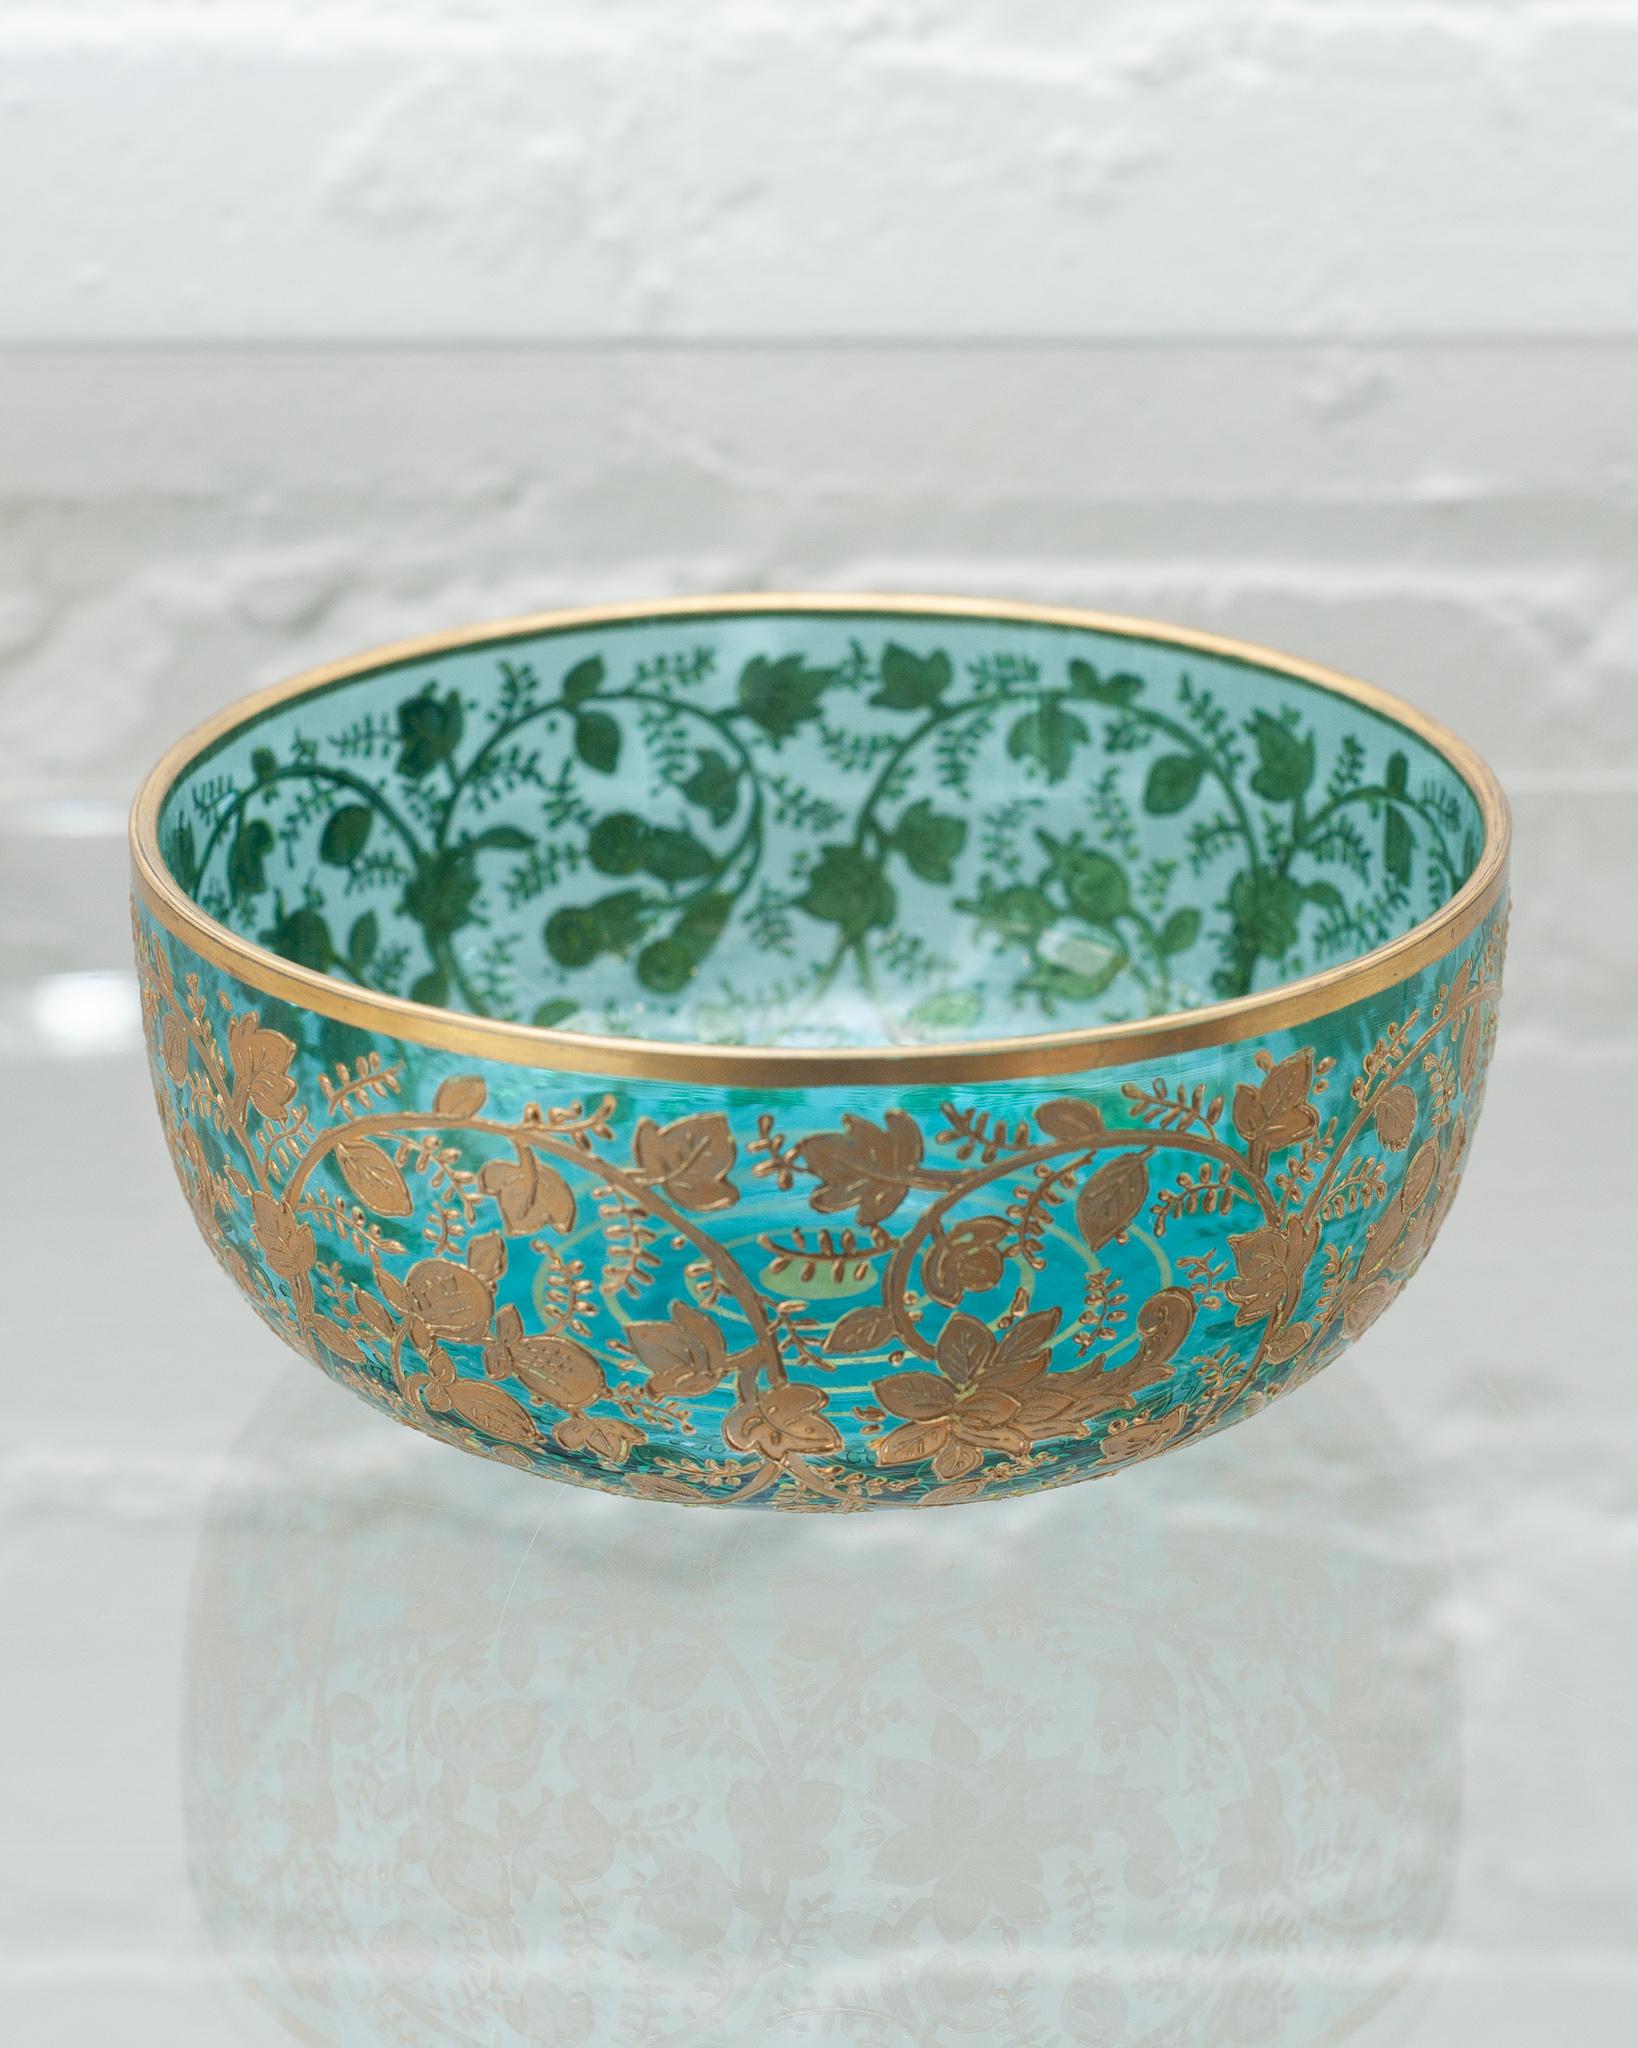 Superbe bol ancien en cristal turquoise de Moser avec une lourde dorure florale en or.